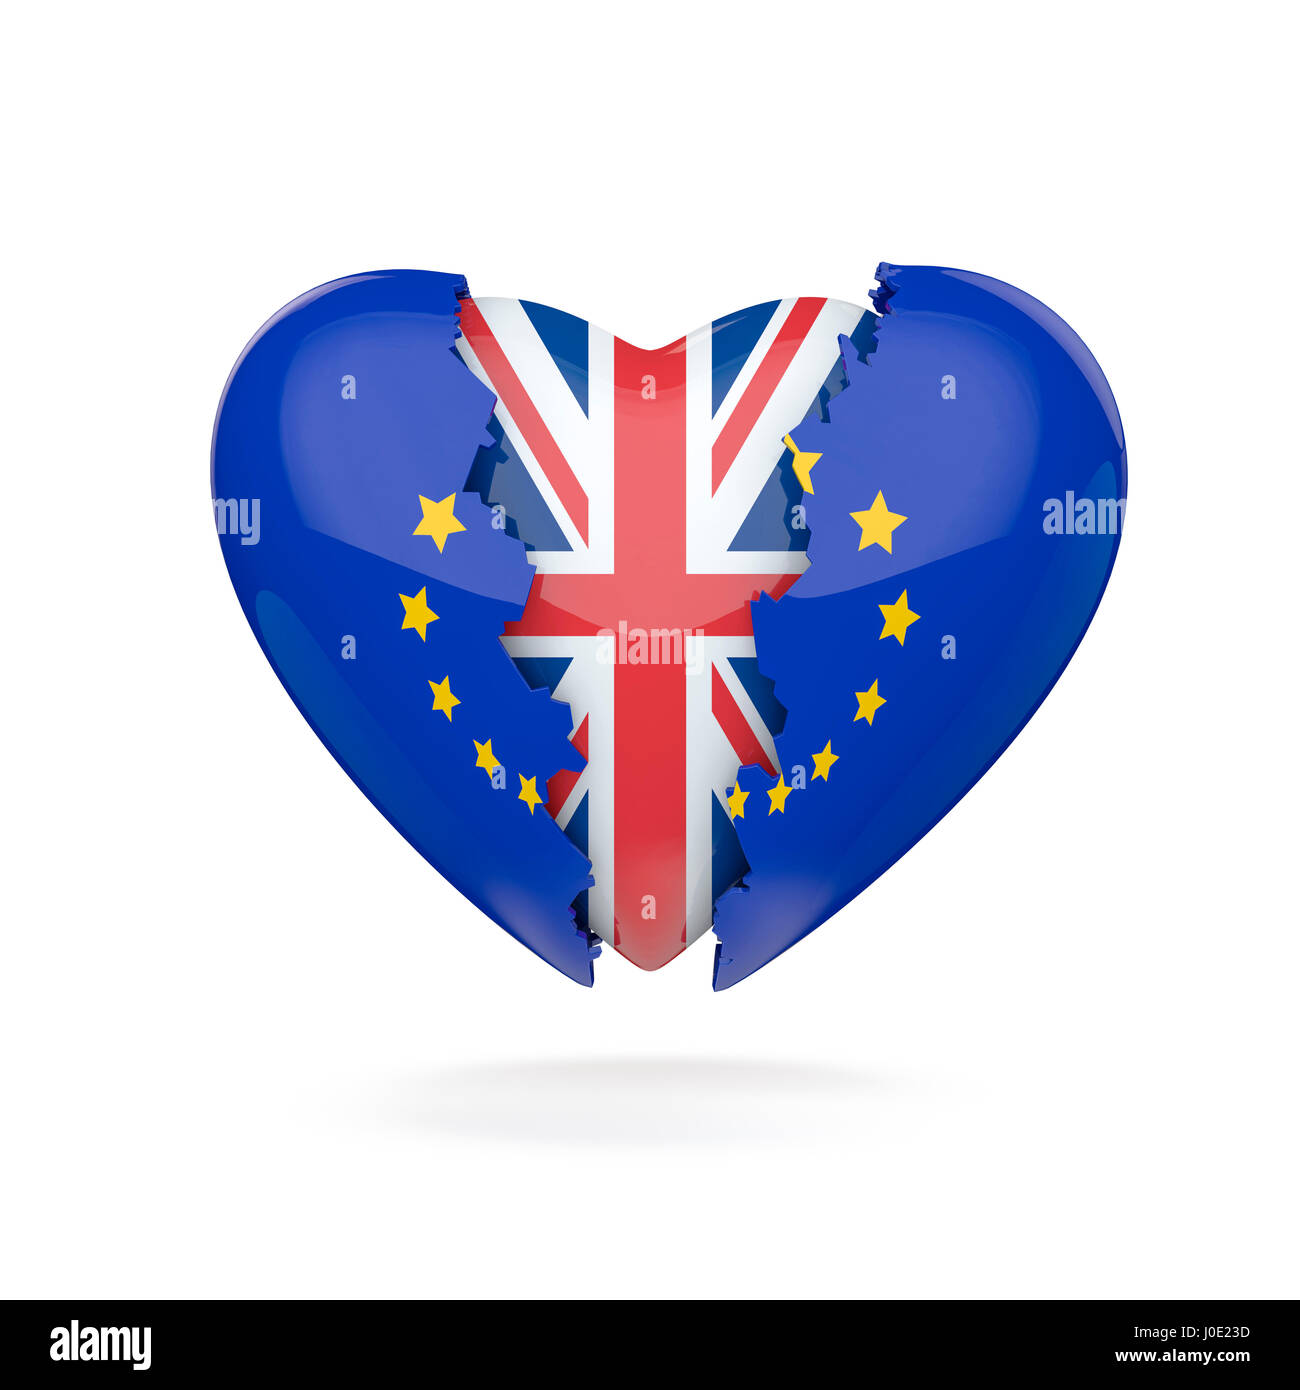 Brexit heart break / 3D illustration of EU heart breaking revealing Union Jack inside Stock Photo